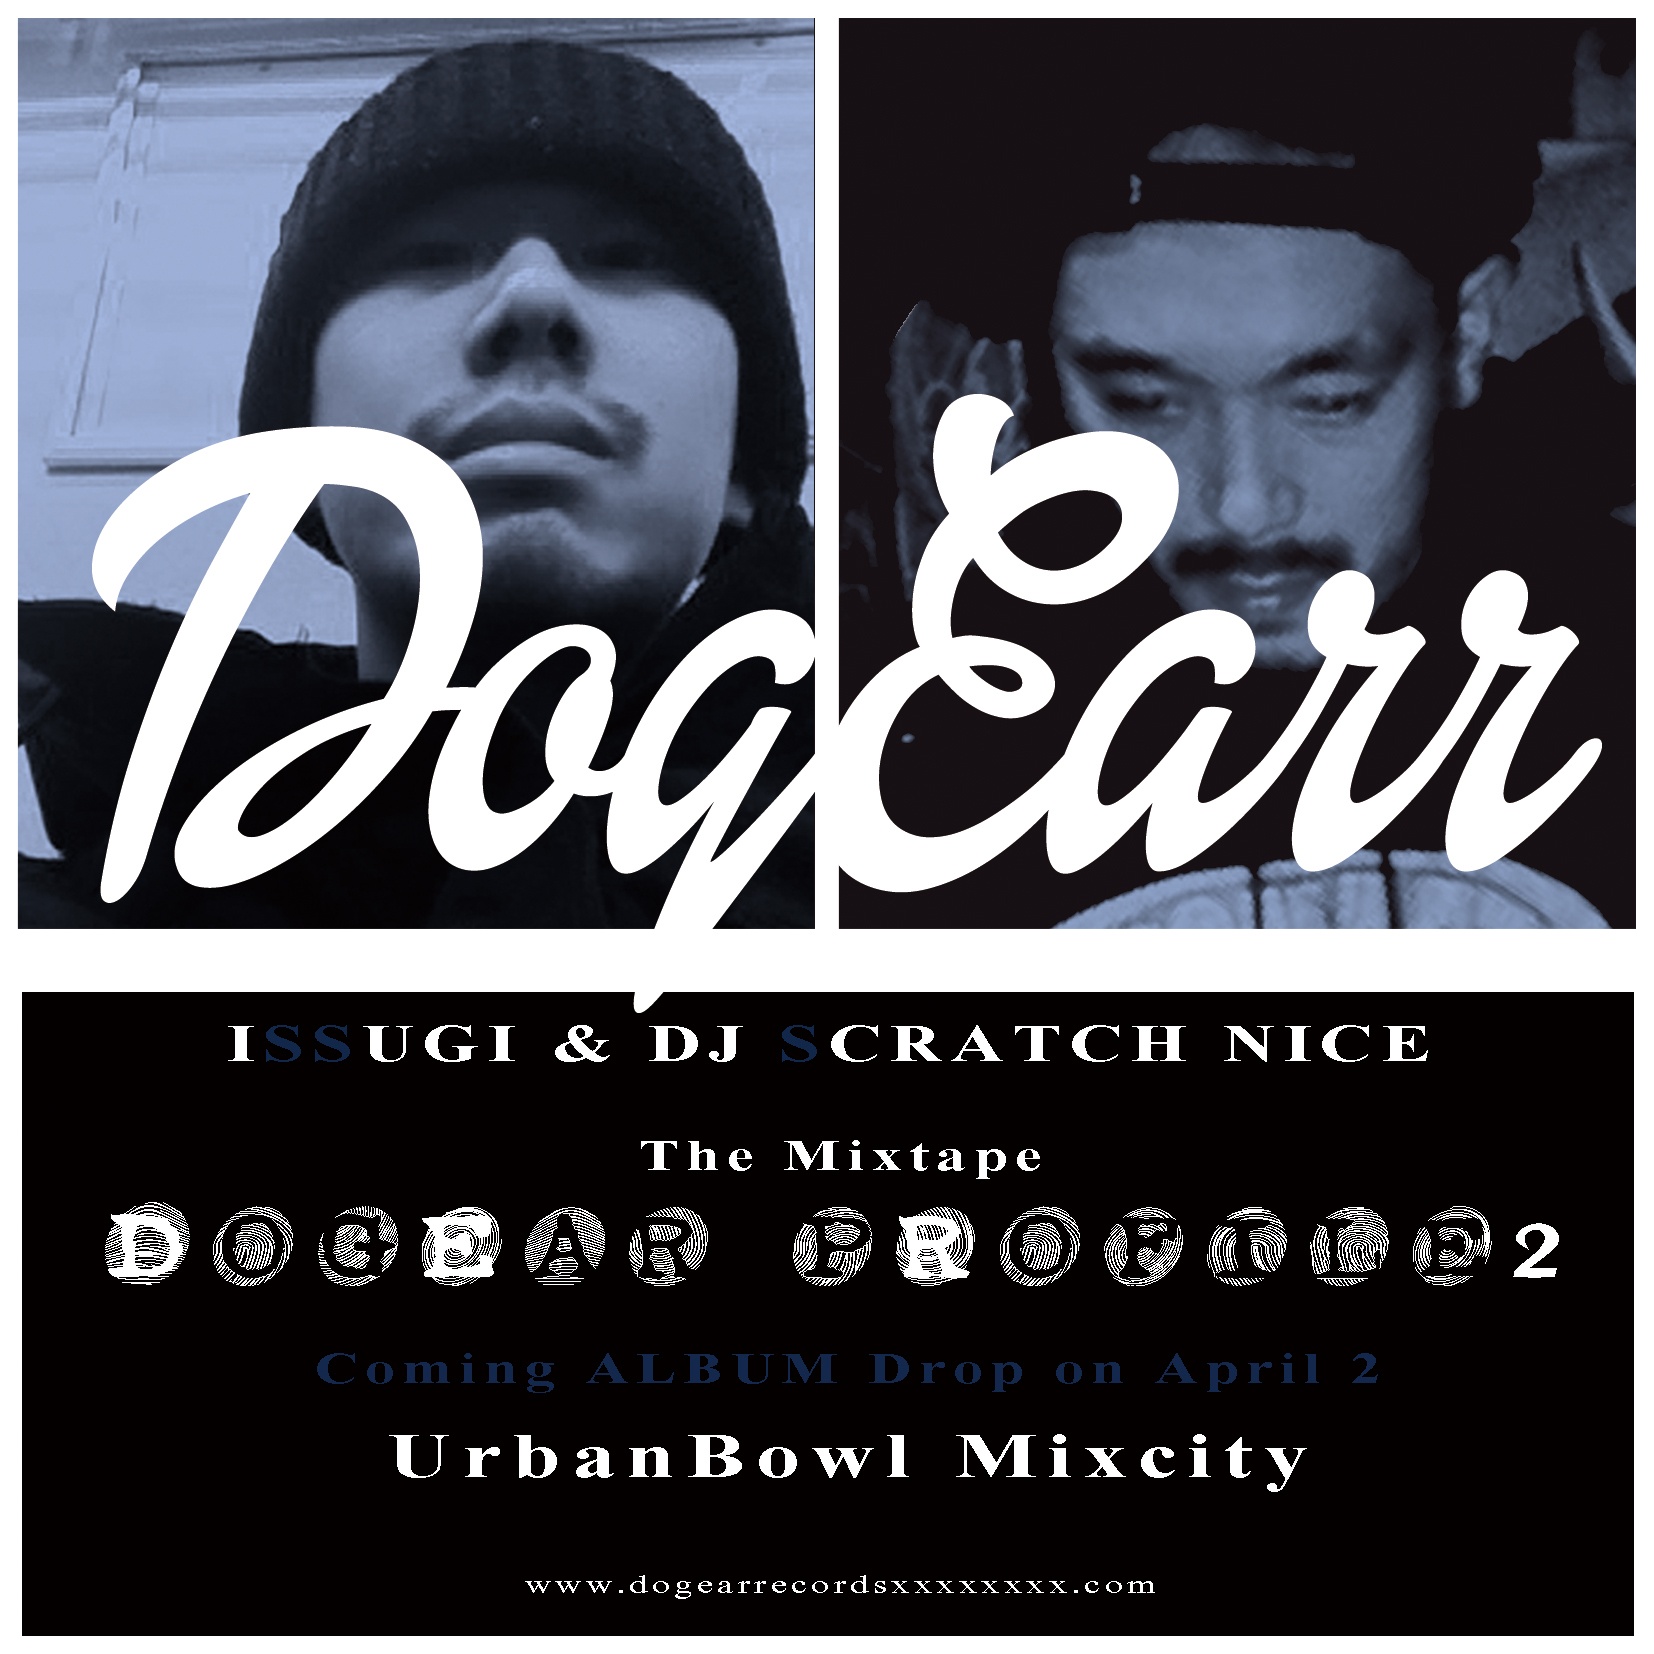 The Mixtape Dogear Profile 2